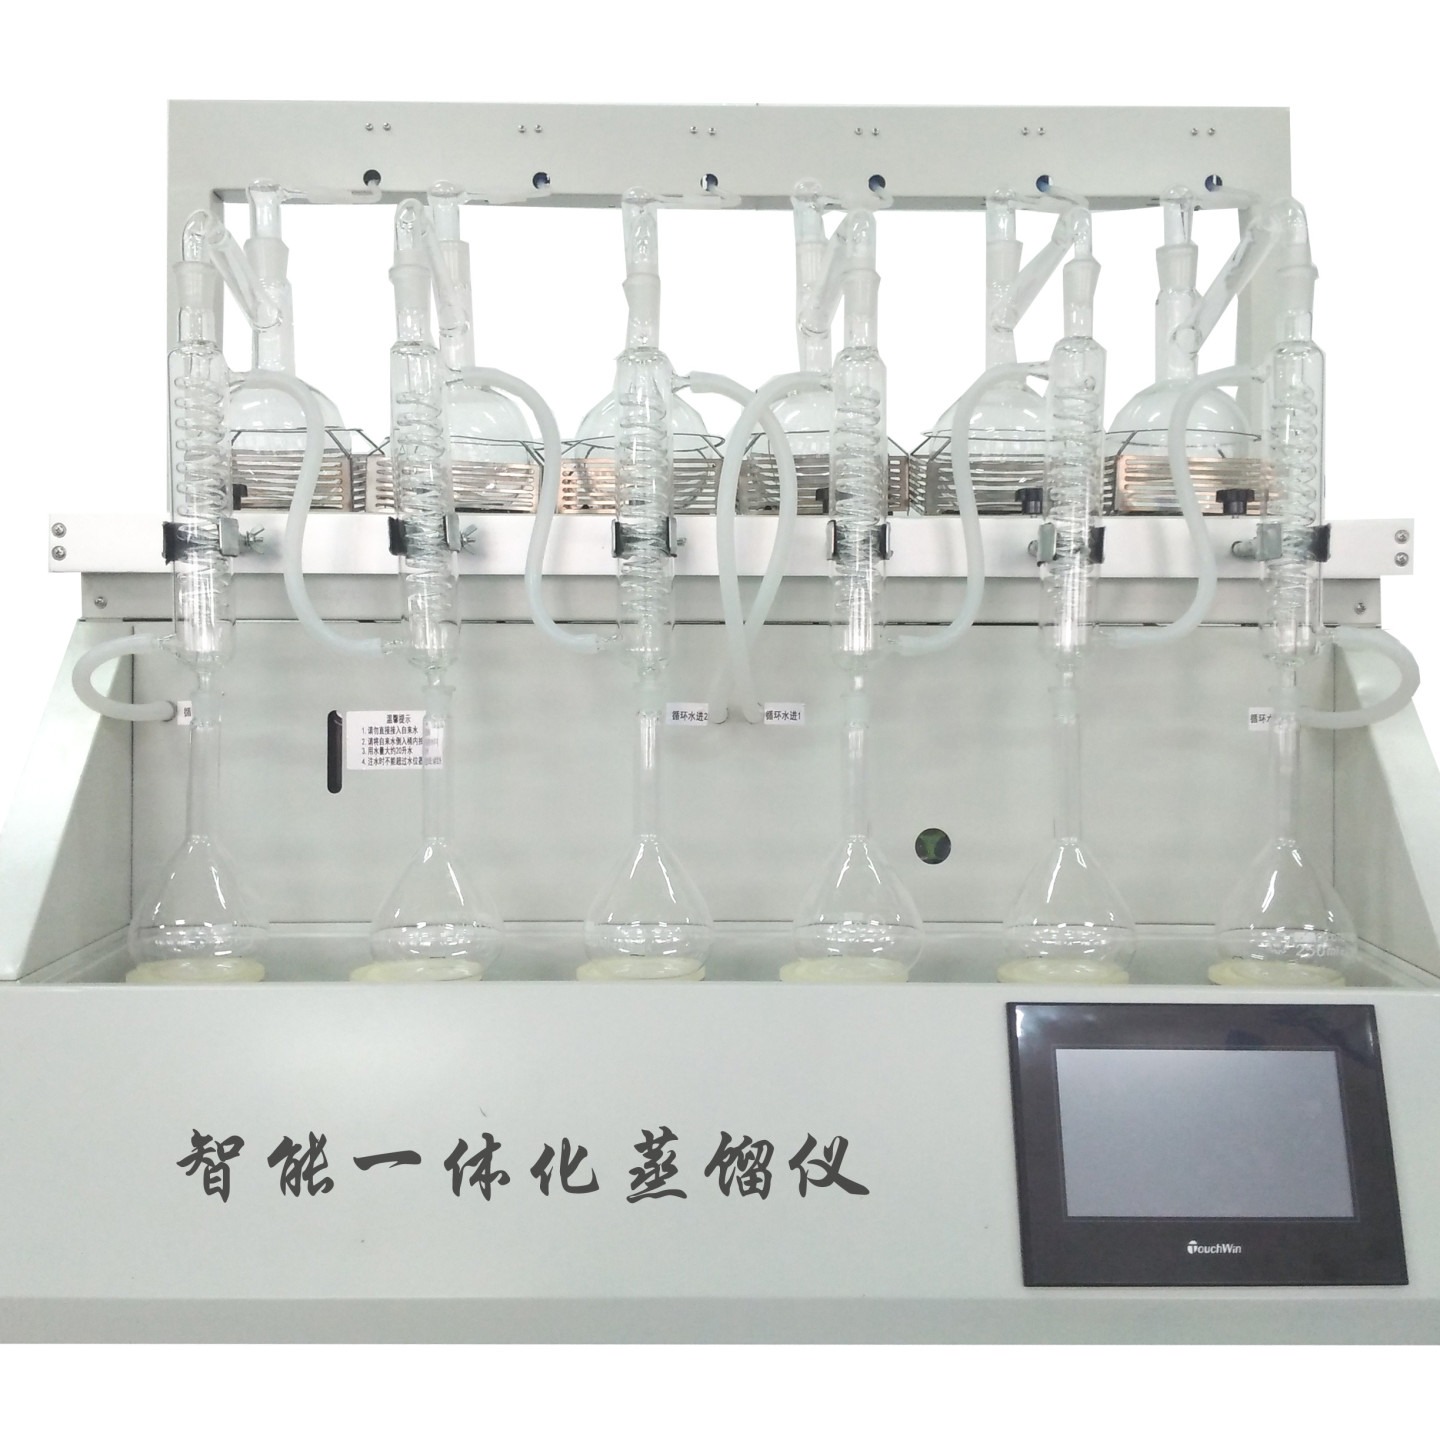 全自动一体化蒸馏仪   CYZL-6 一体化智能蒸馏装置 多功能一体化蒸馏仪图片